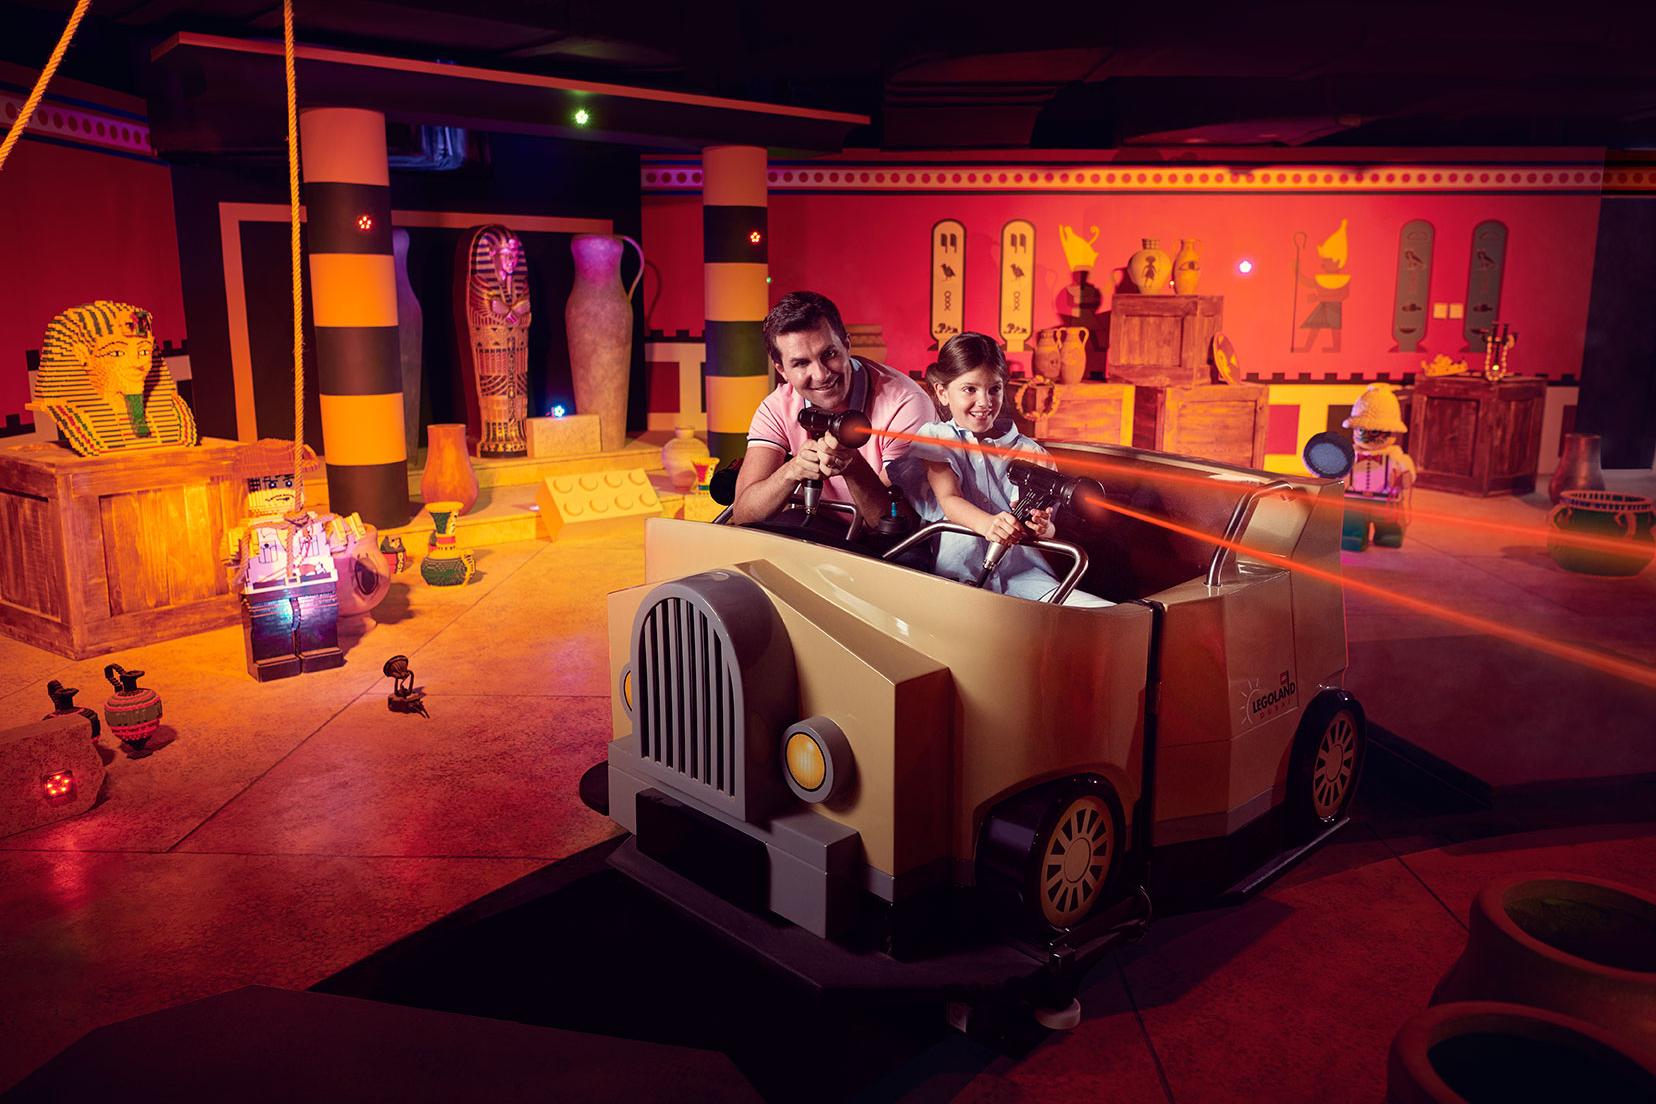 Biglietti per Legoland Dubai